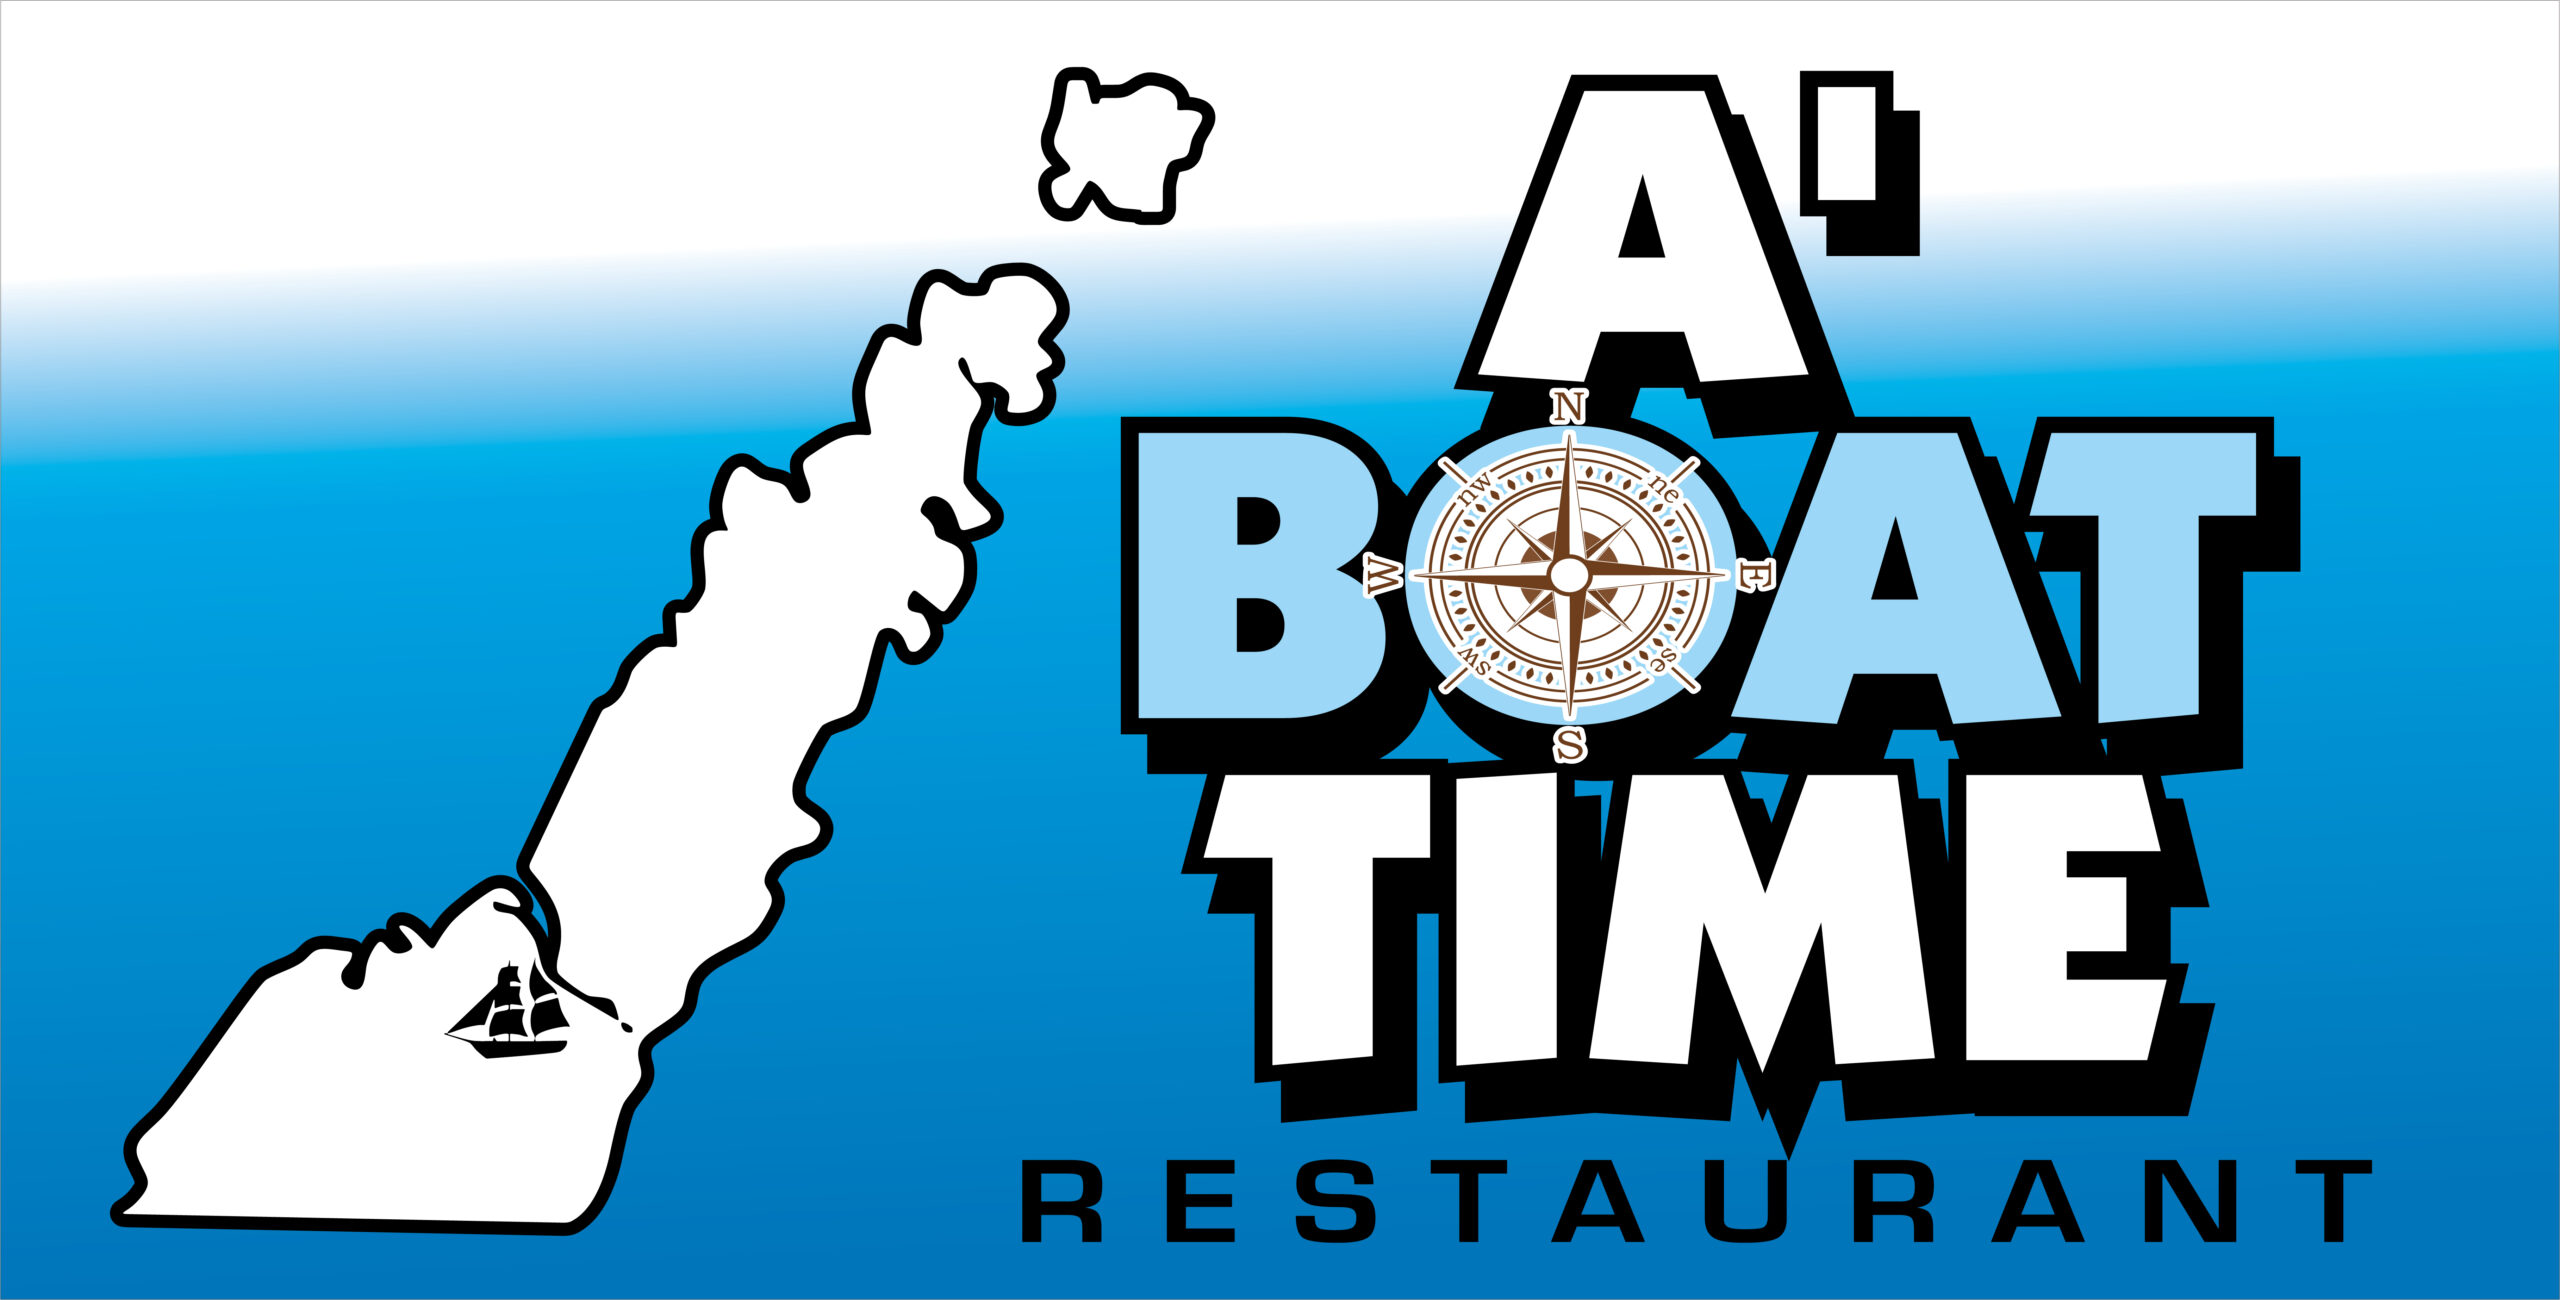 ABoat Time Restaurant